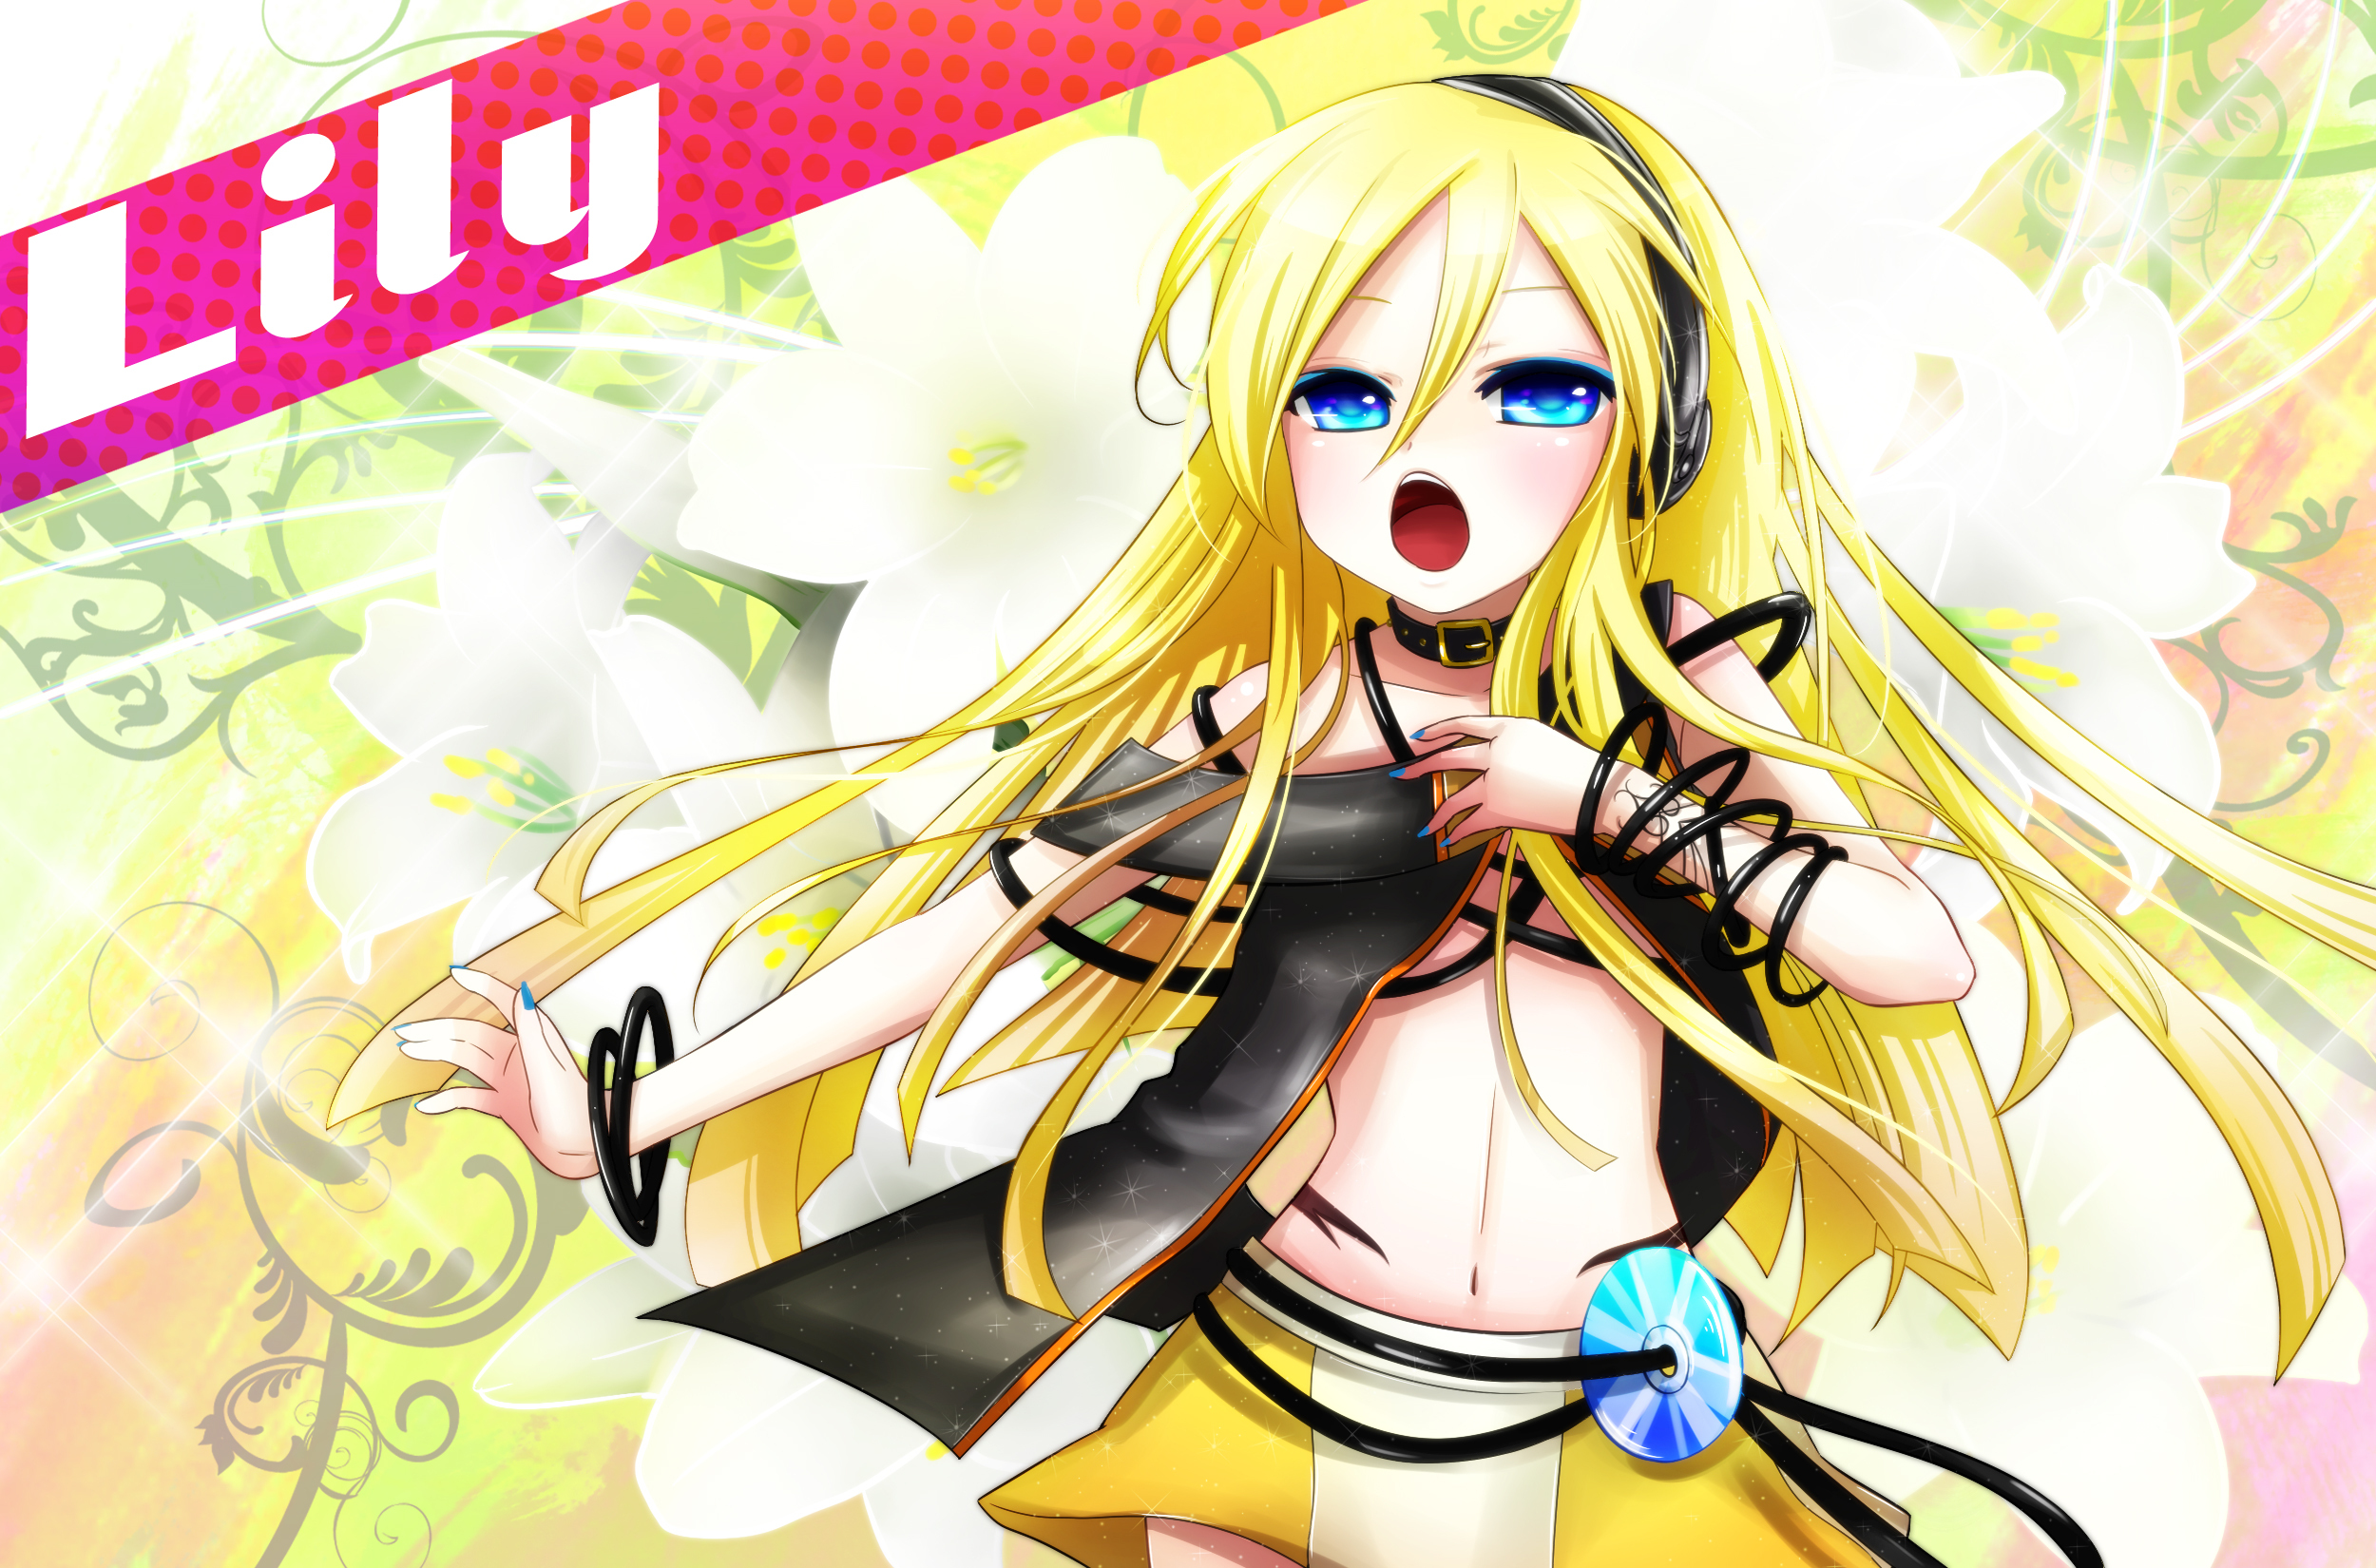 Descarga gratuita de fondo de pantalla para móvil de Vocaloid, Animado, Lirio (Vocaloid).